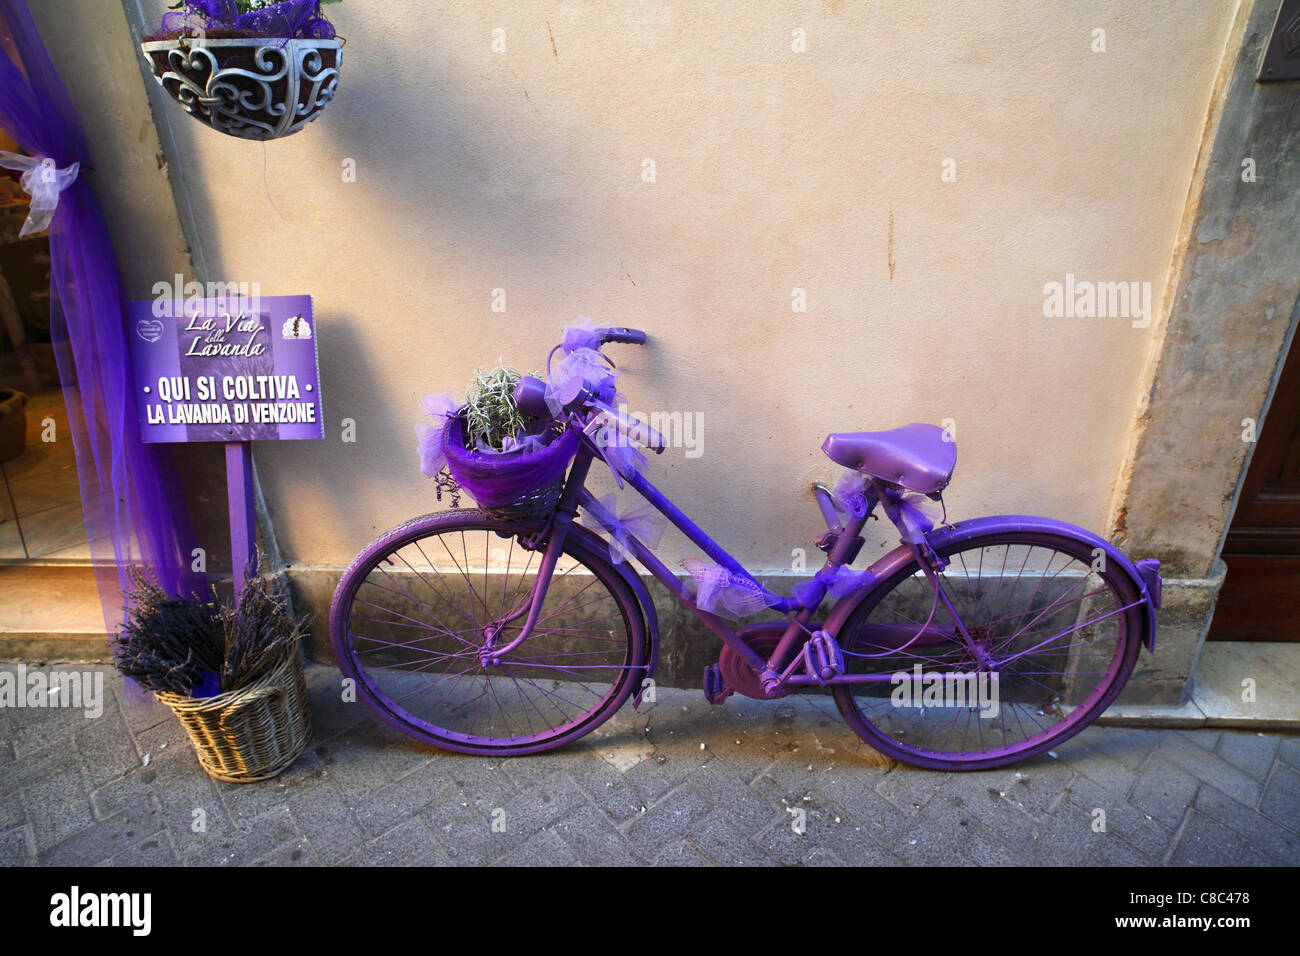 Un vélo violet à l'extérieur d'un magasin spécialisé dans les produits de lavande en Guardiagrele, Italie. Banque D'Images